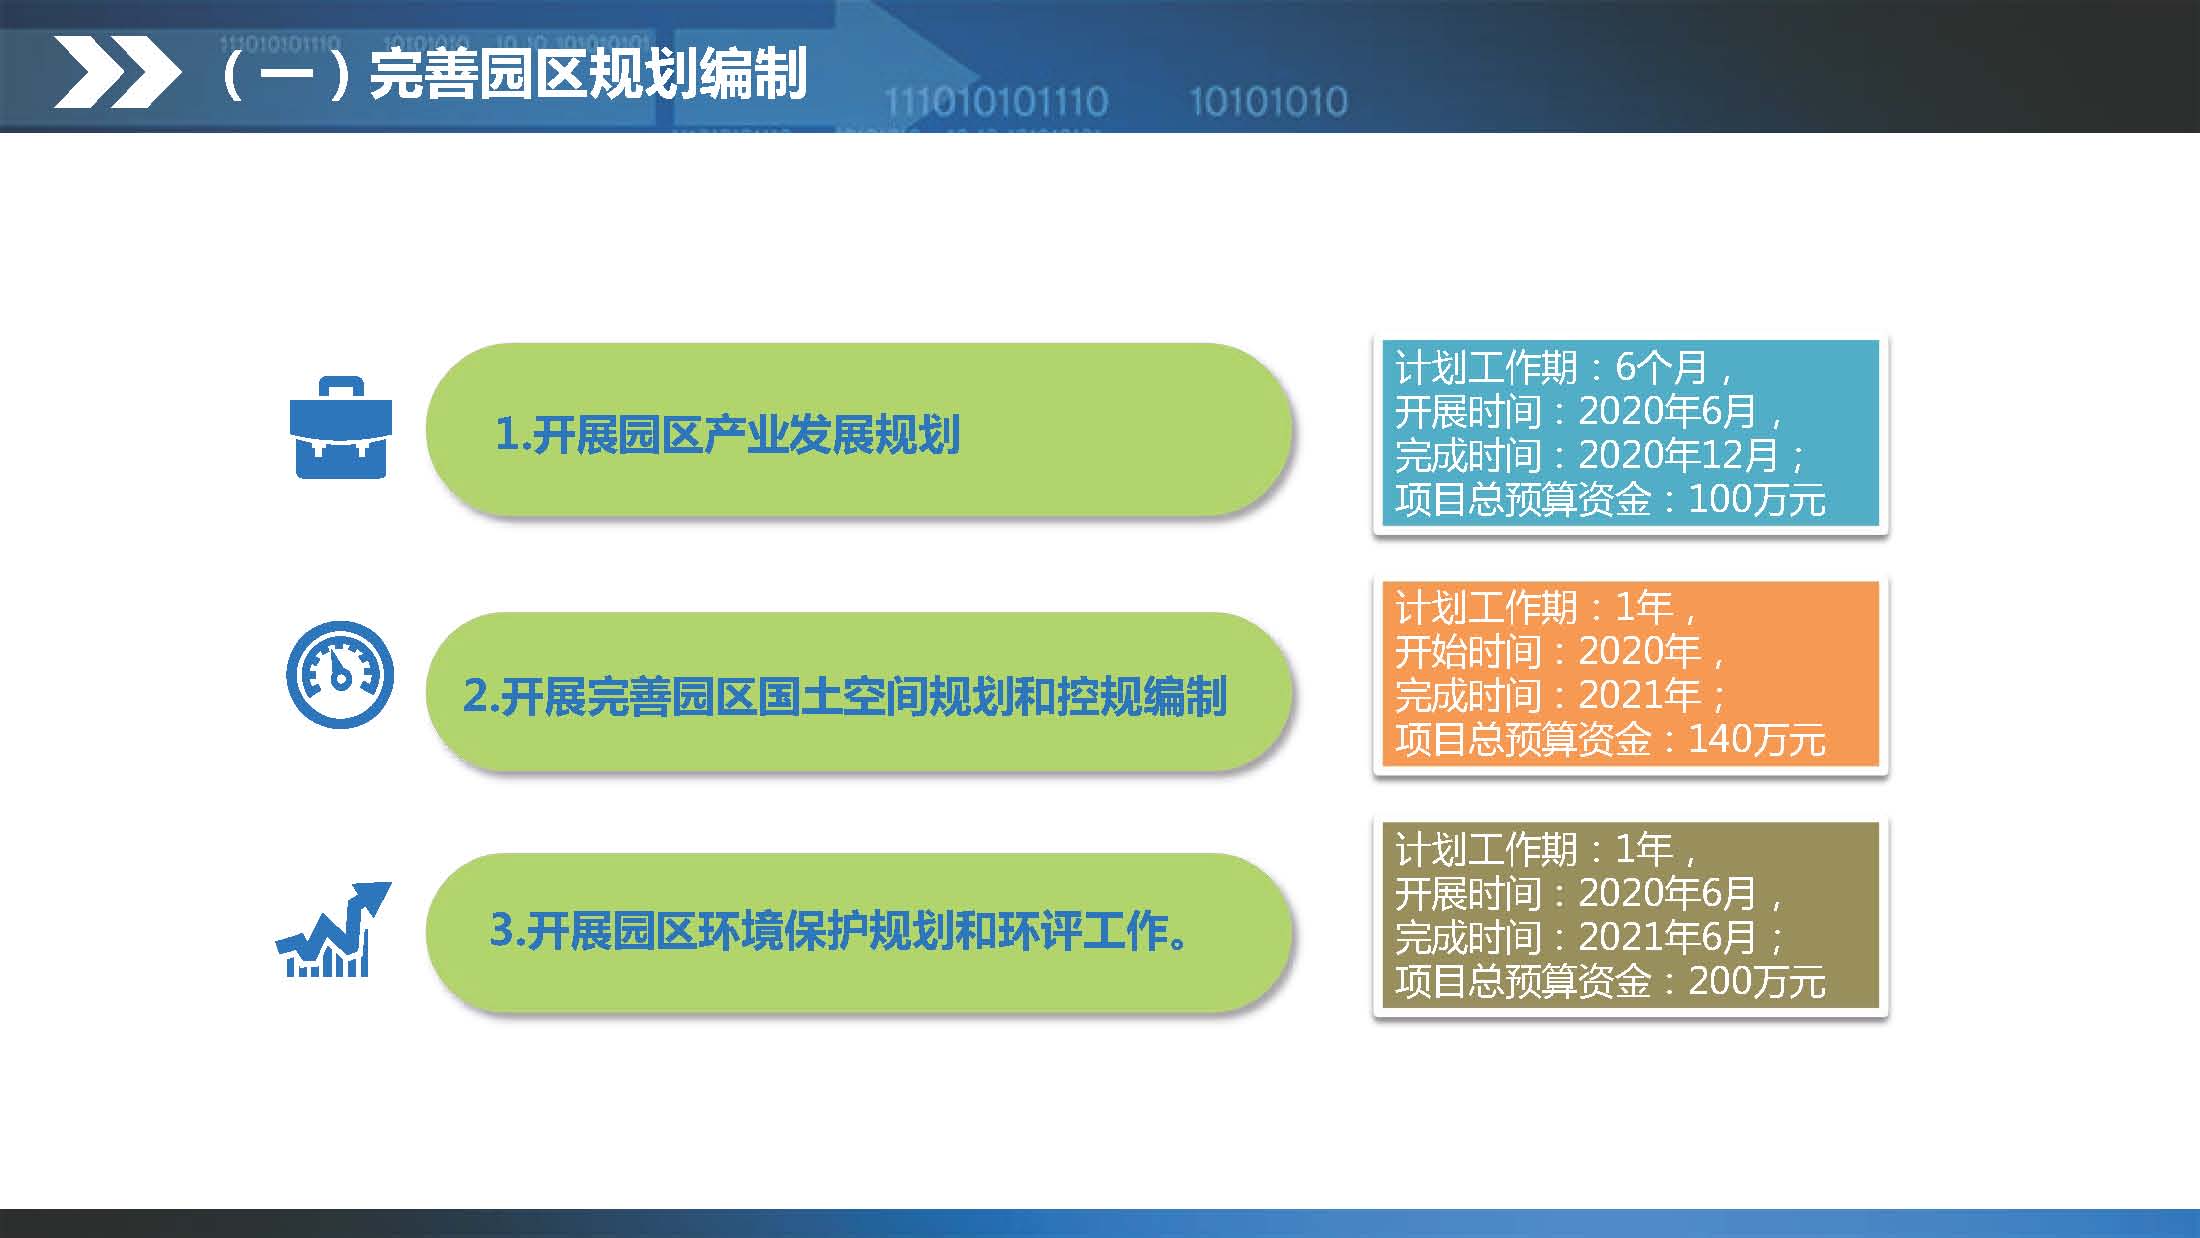 《江门蓬江产业转移工业园建设三年行动计划（2020-2022年）》图文解读_页面_10.jpg